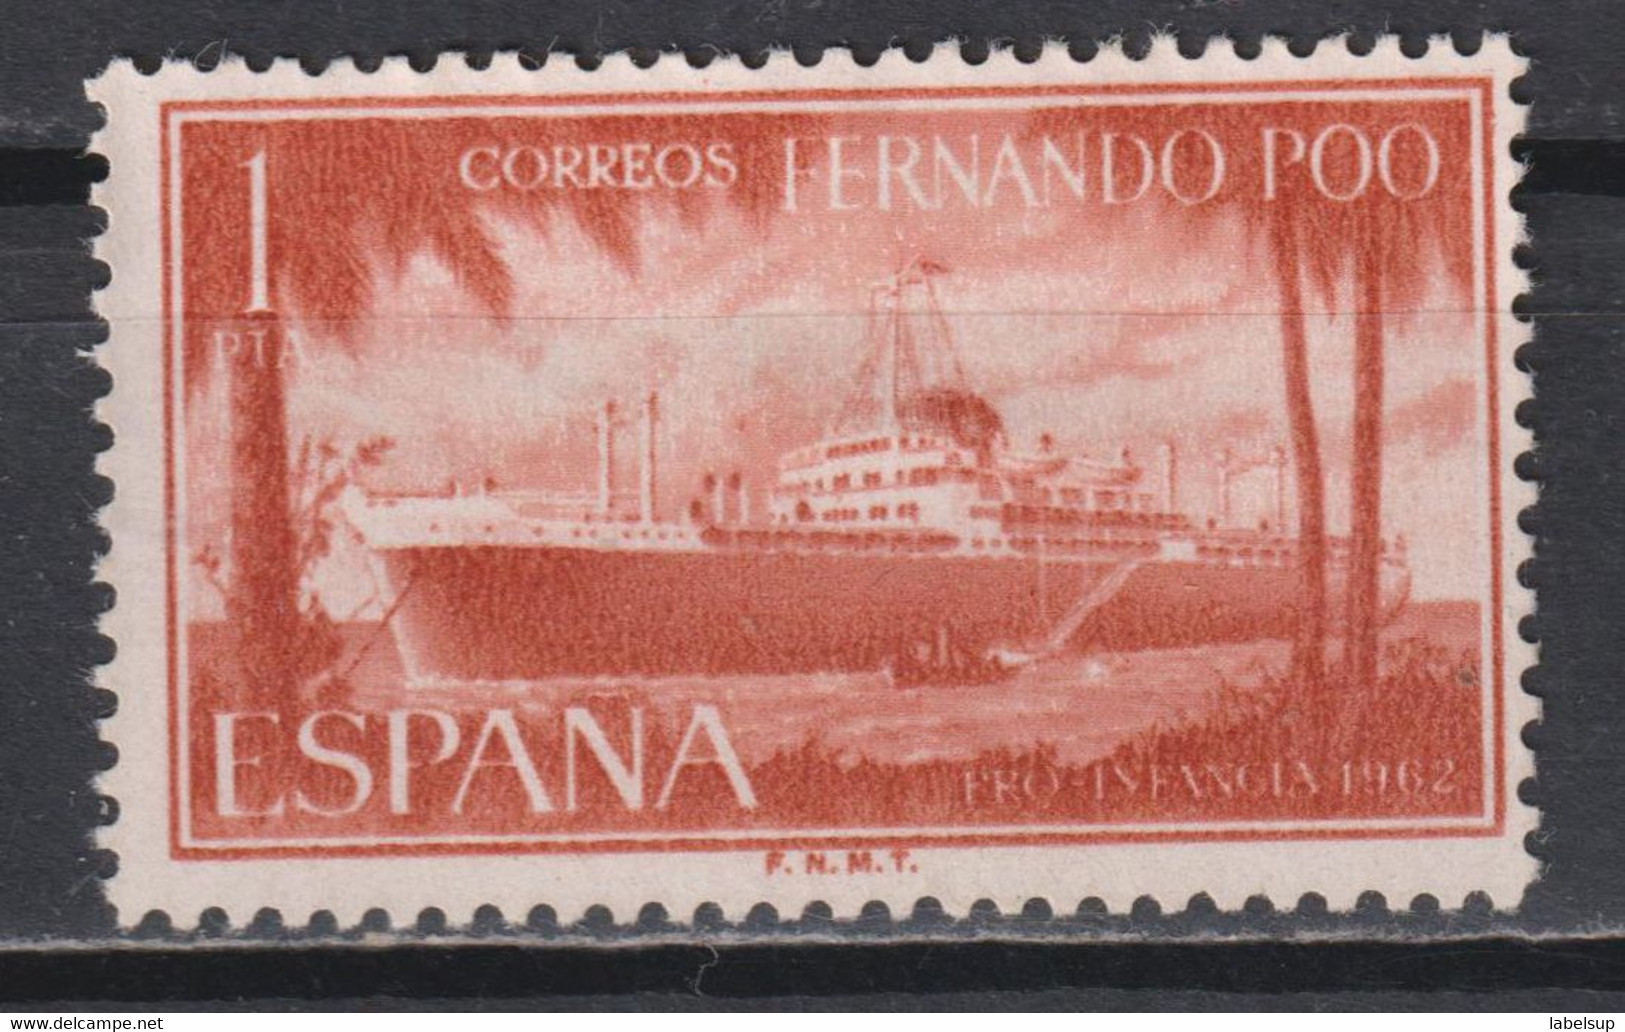 Timbre Neuf De Fernando Poo, Espagne De 1962 N° 201 NSG - Fernando Po